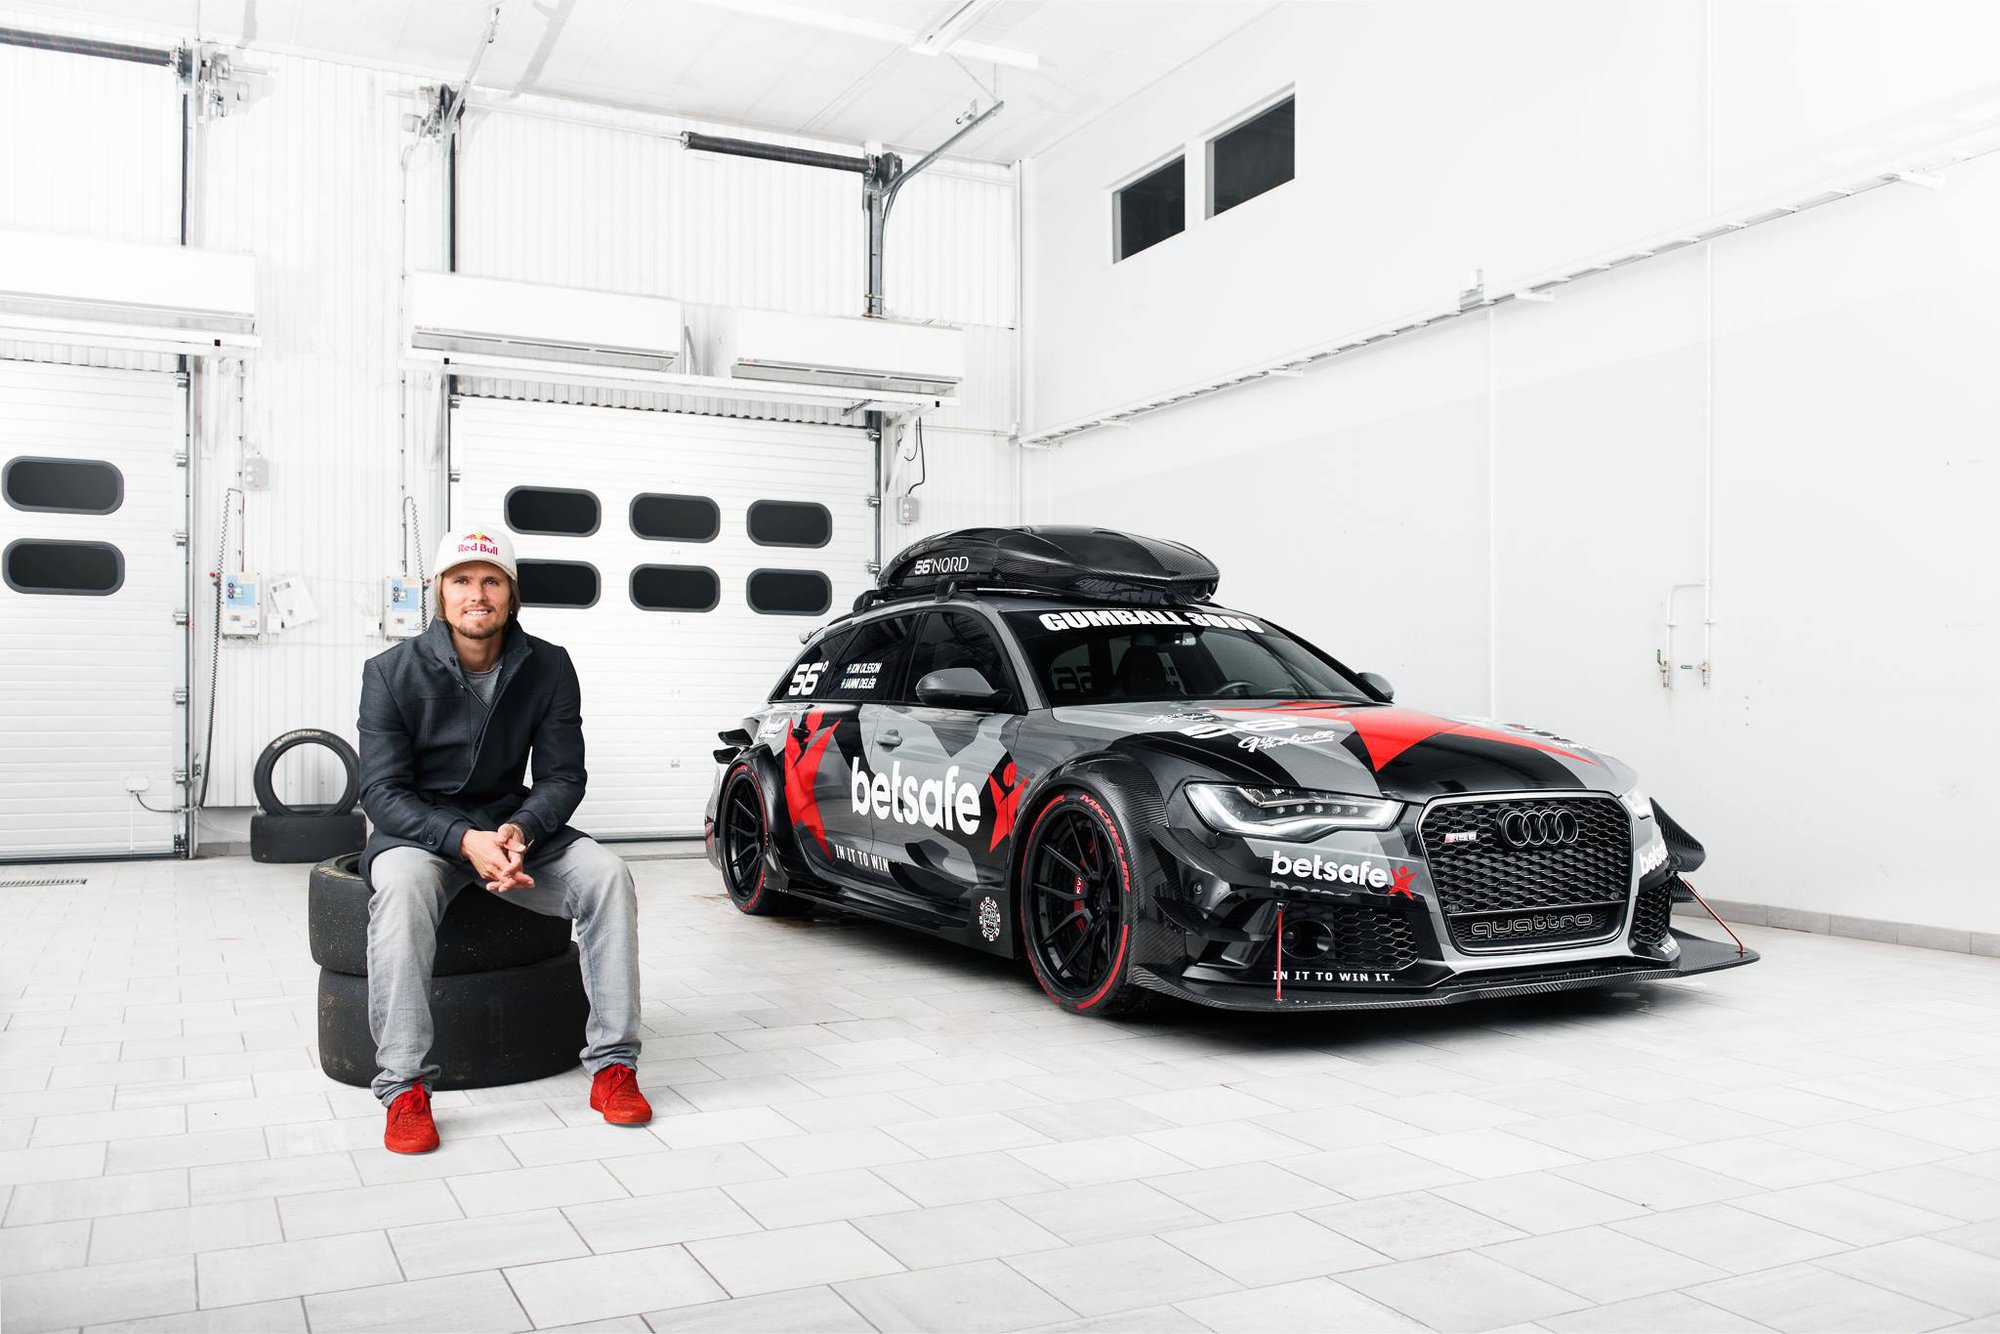 Hrdý bývalý majitel a tvůrce Audi RS6 DTM.